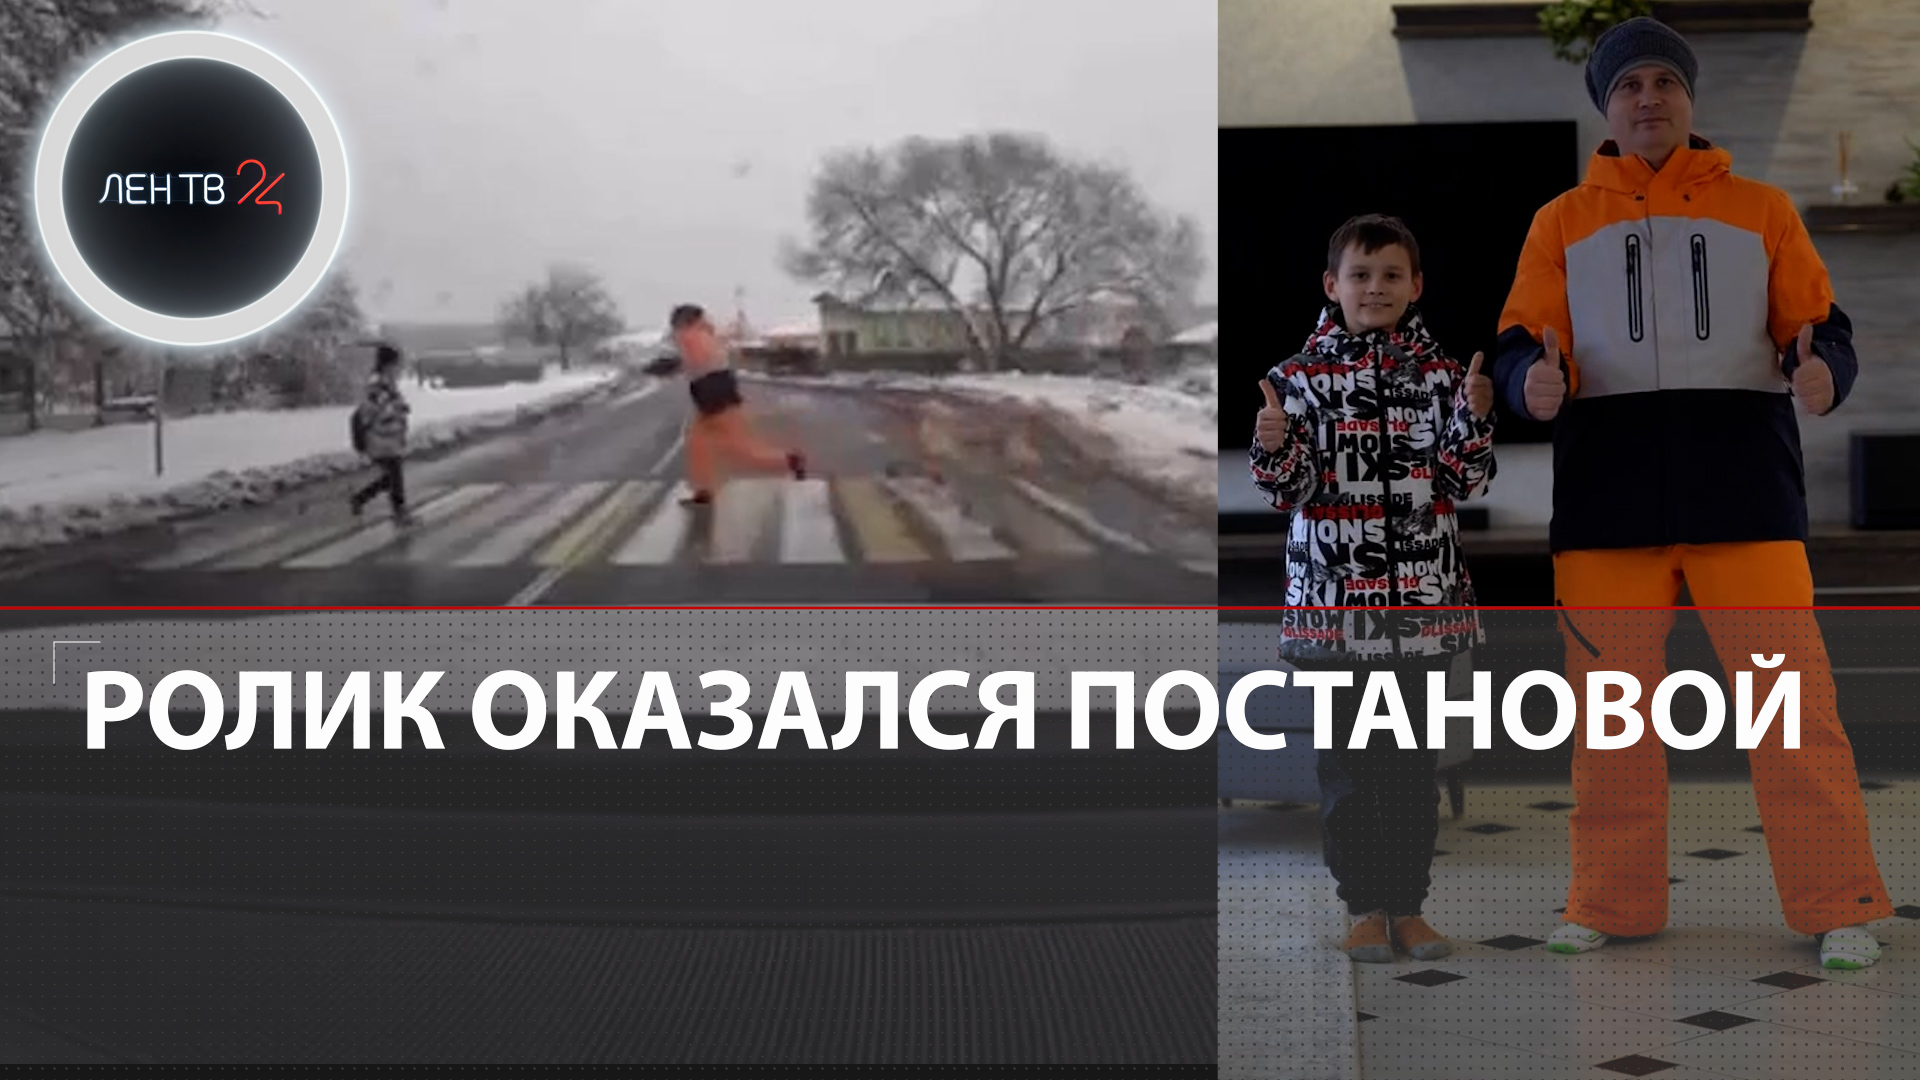 ФЕЙК: Герой спас ребенка из-под колес машины | Постановочный ролик сняли белорусские тиктокеры